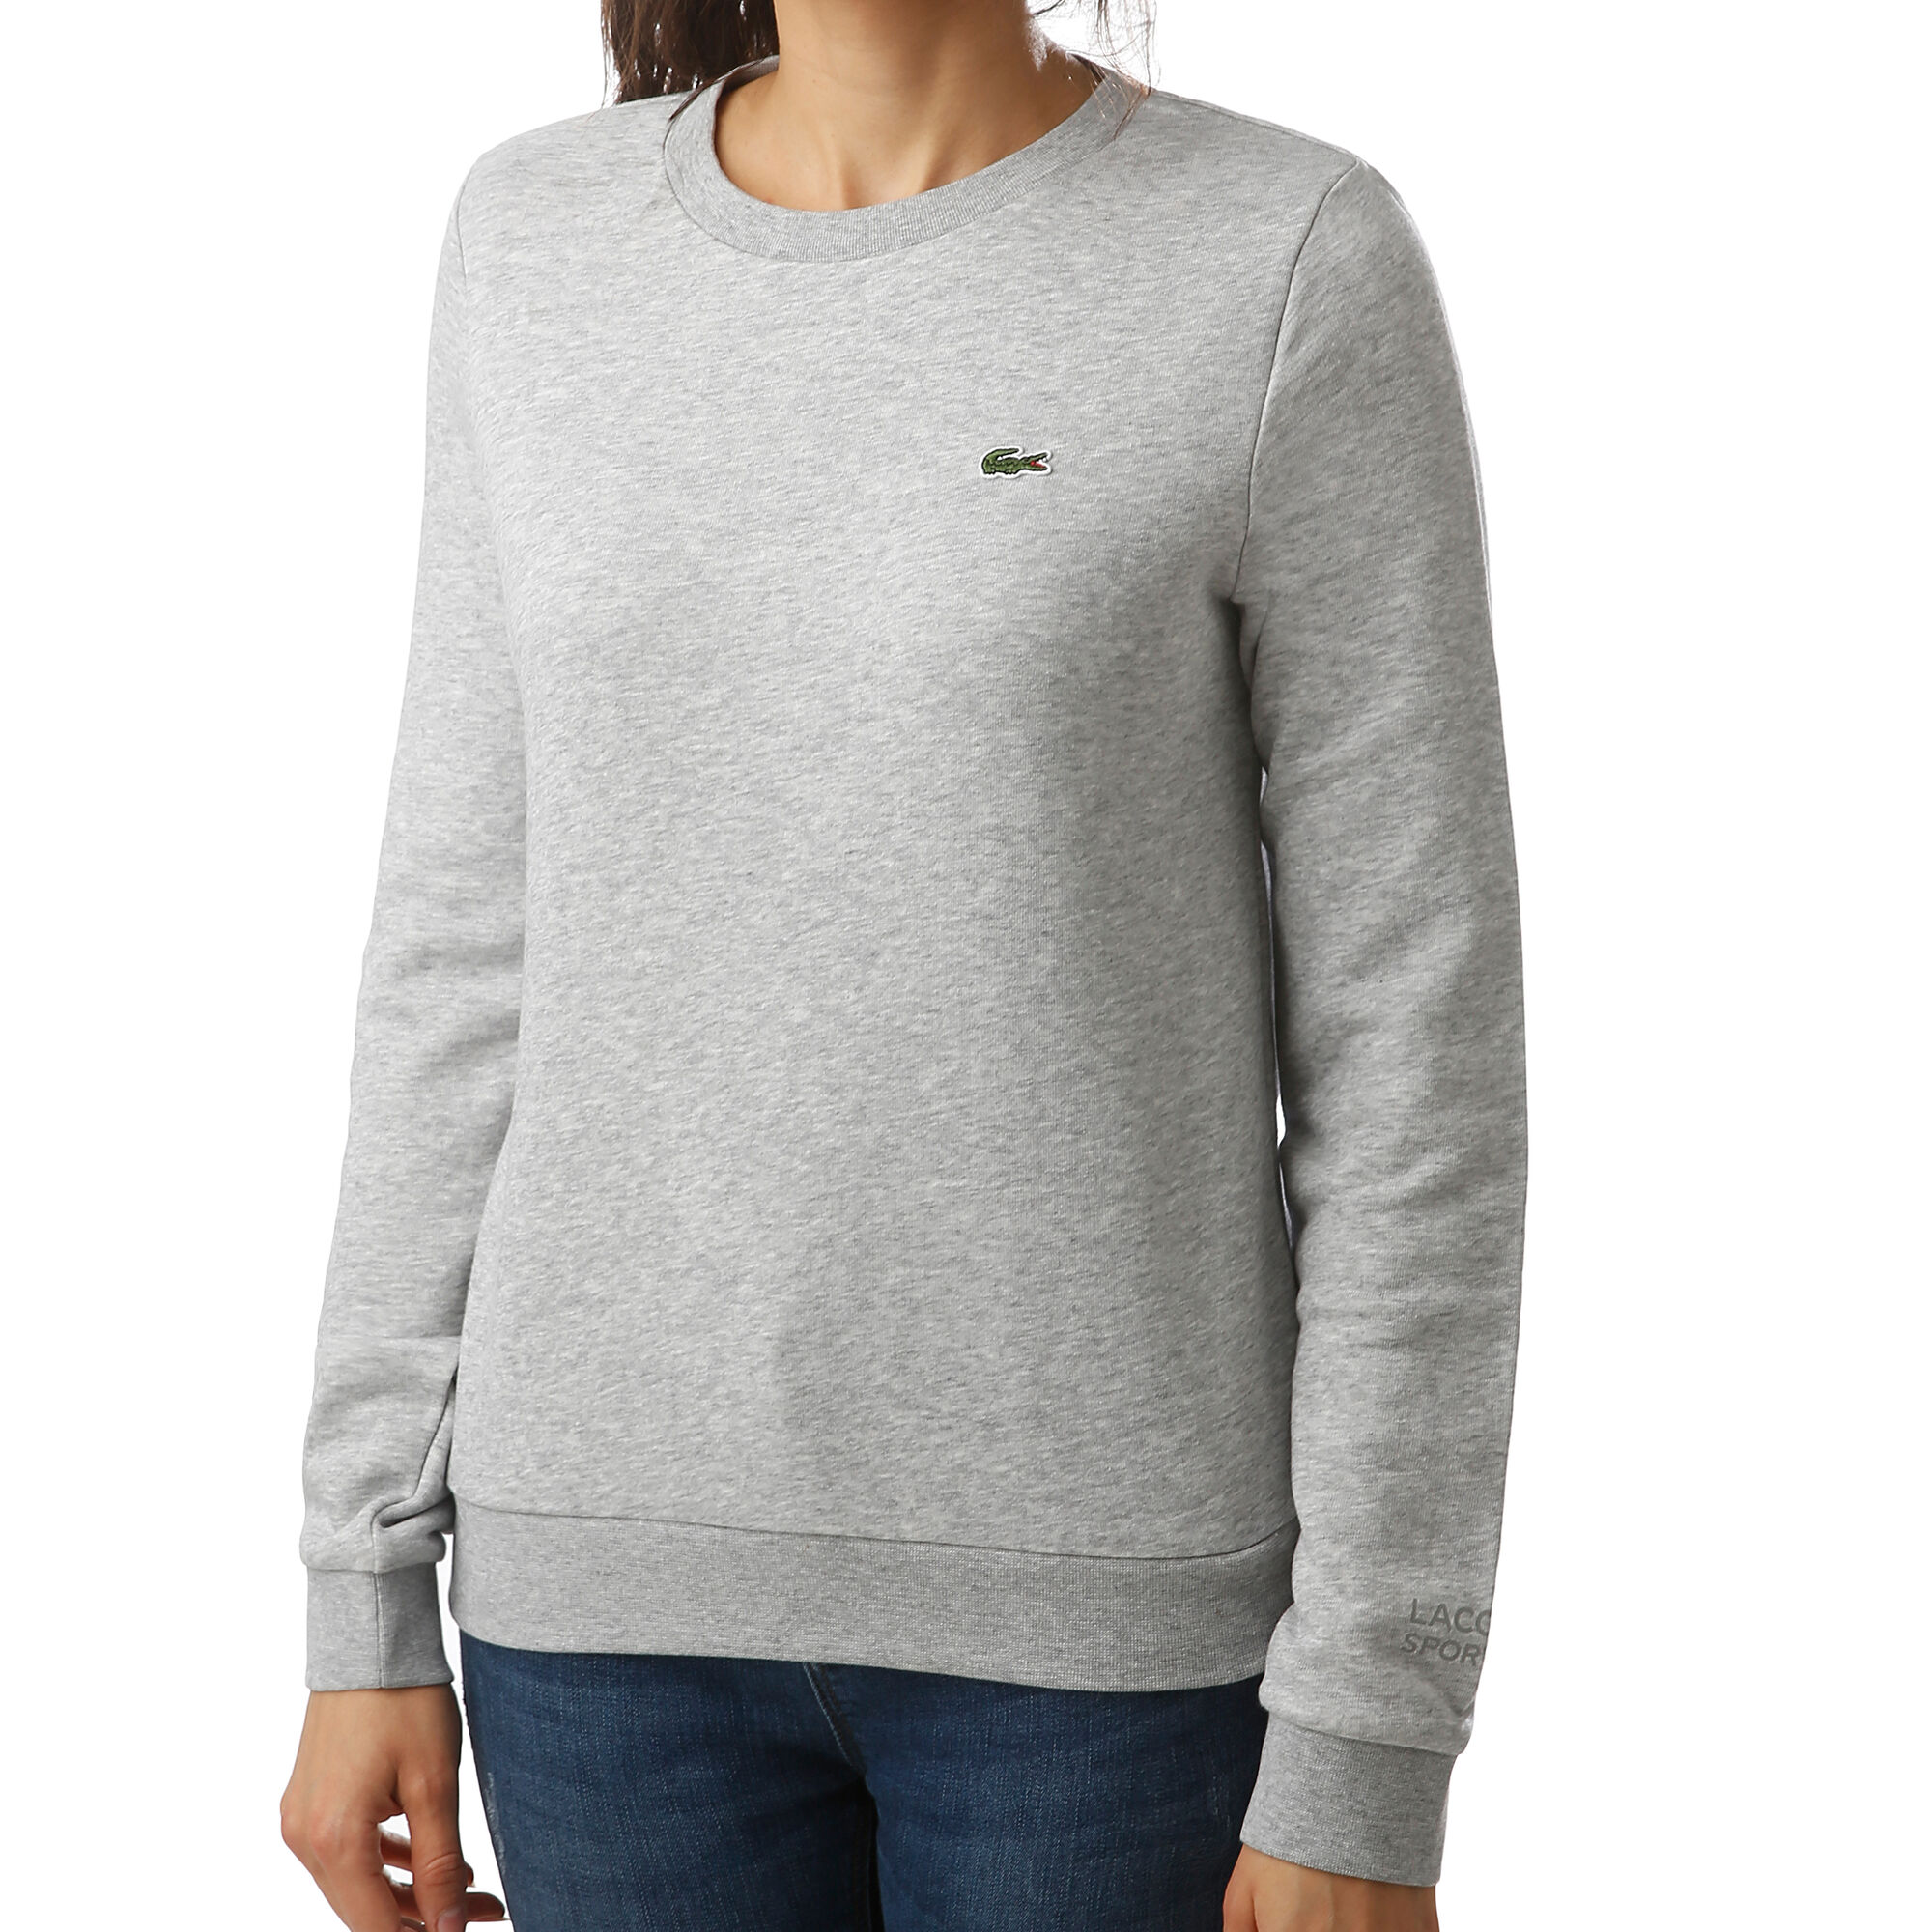 buy Lacoste Sweatshirt Women Green online | Tennis-Point